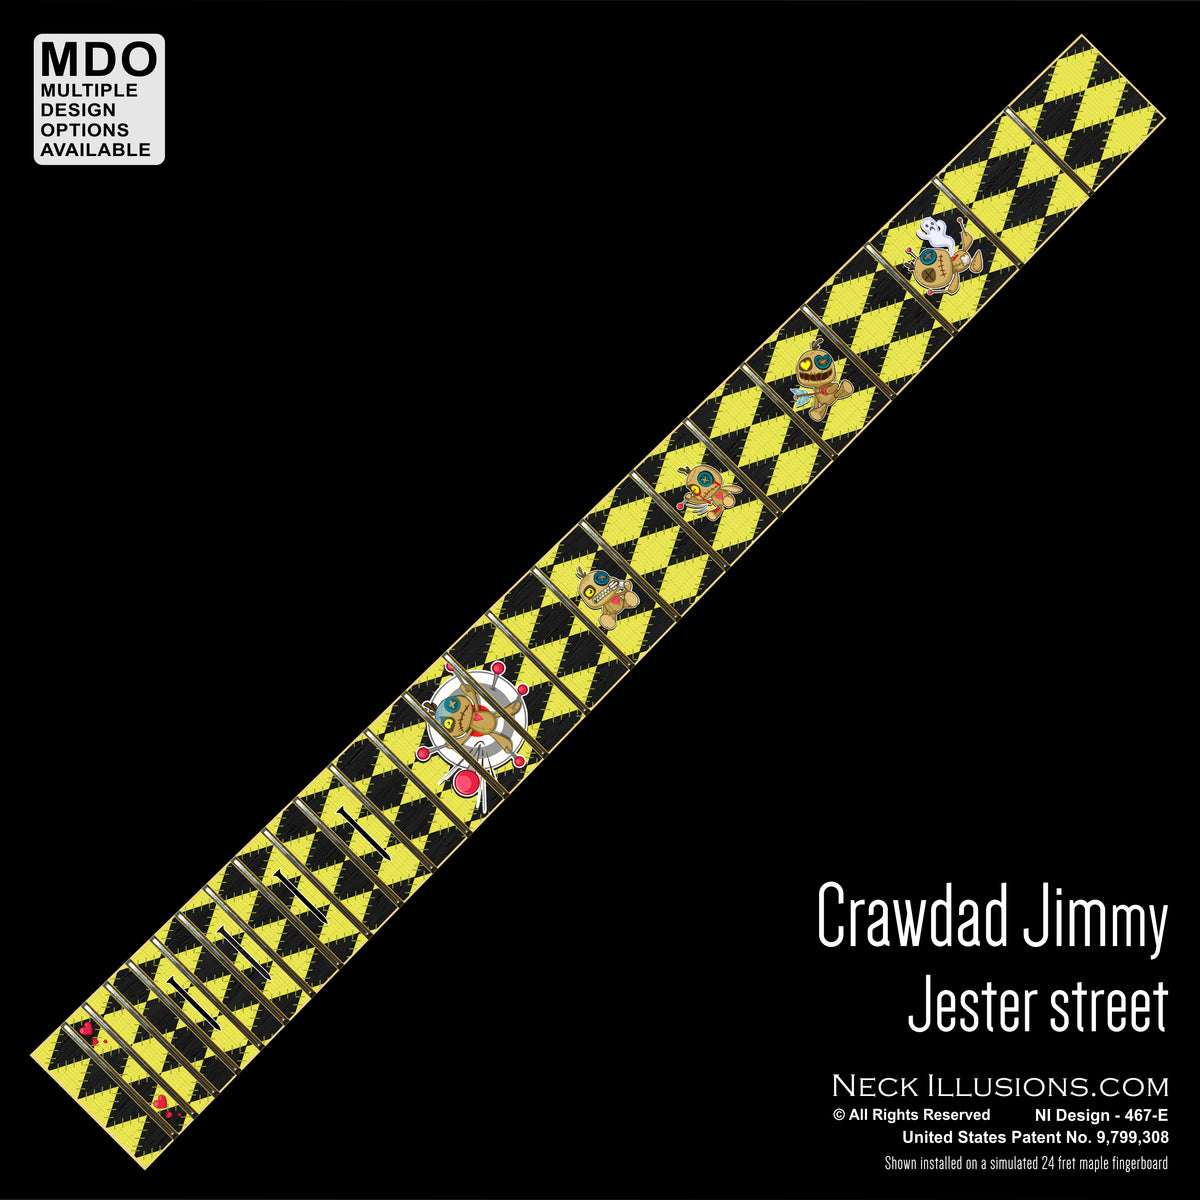 Crawdad Jimmy